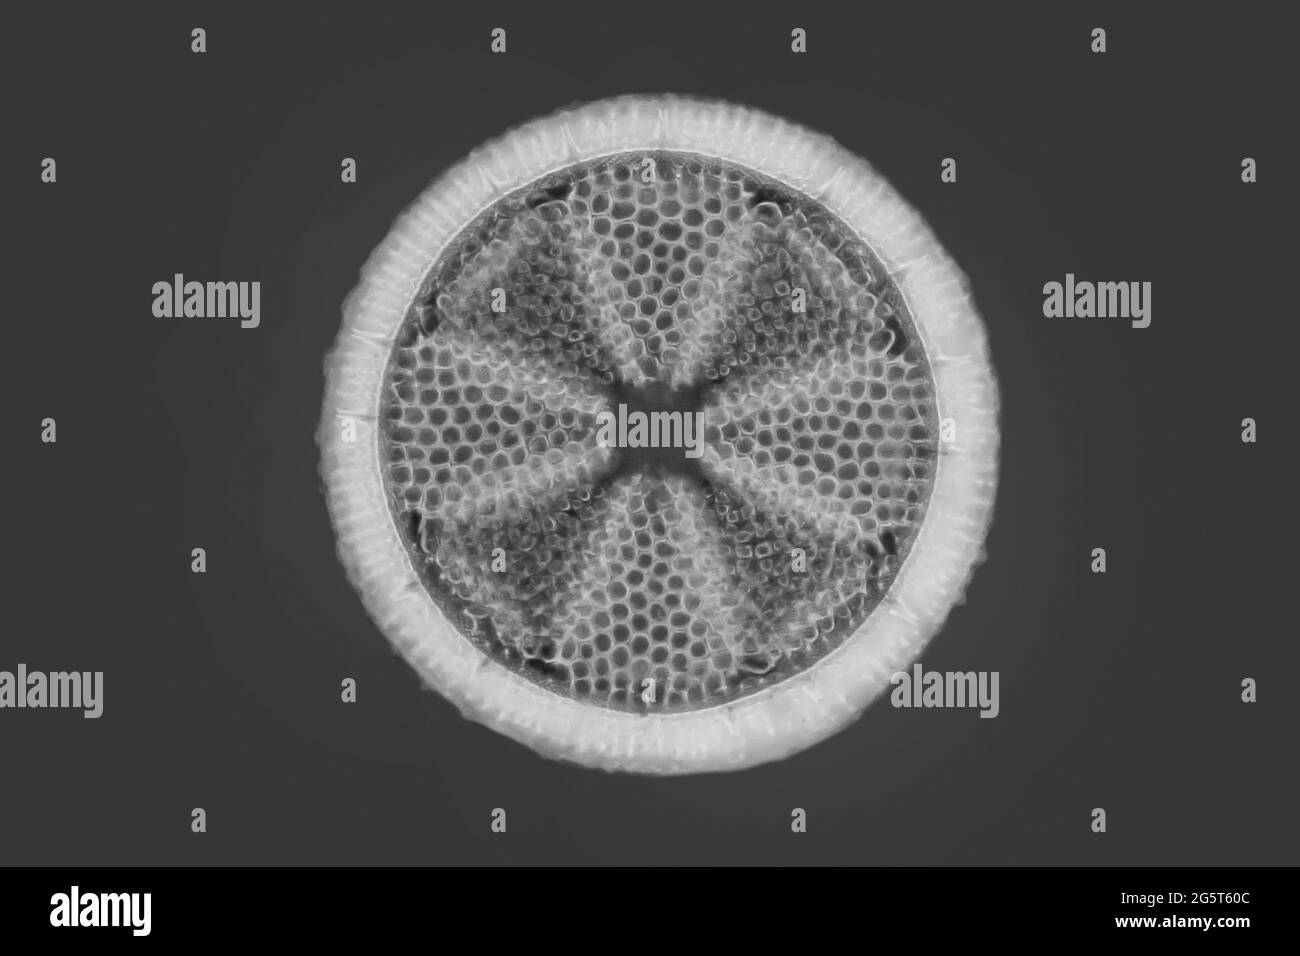 Diatom (Diatomeae), diatom del fiume Patuxent, immagine MRI a contrasto di fase, USA, Maryland Foto Stock